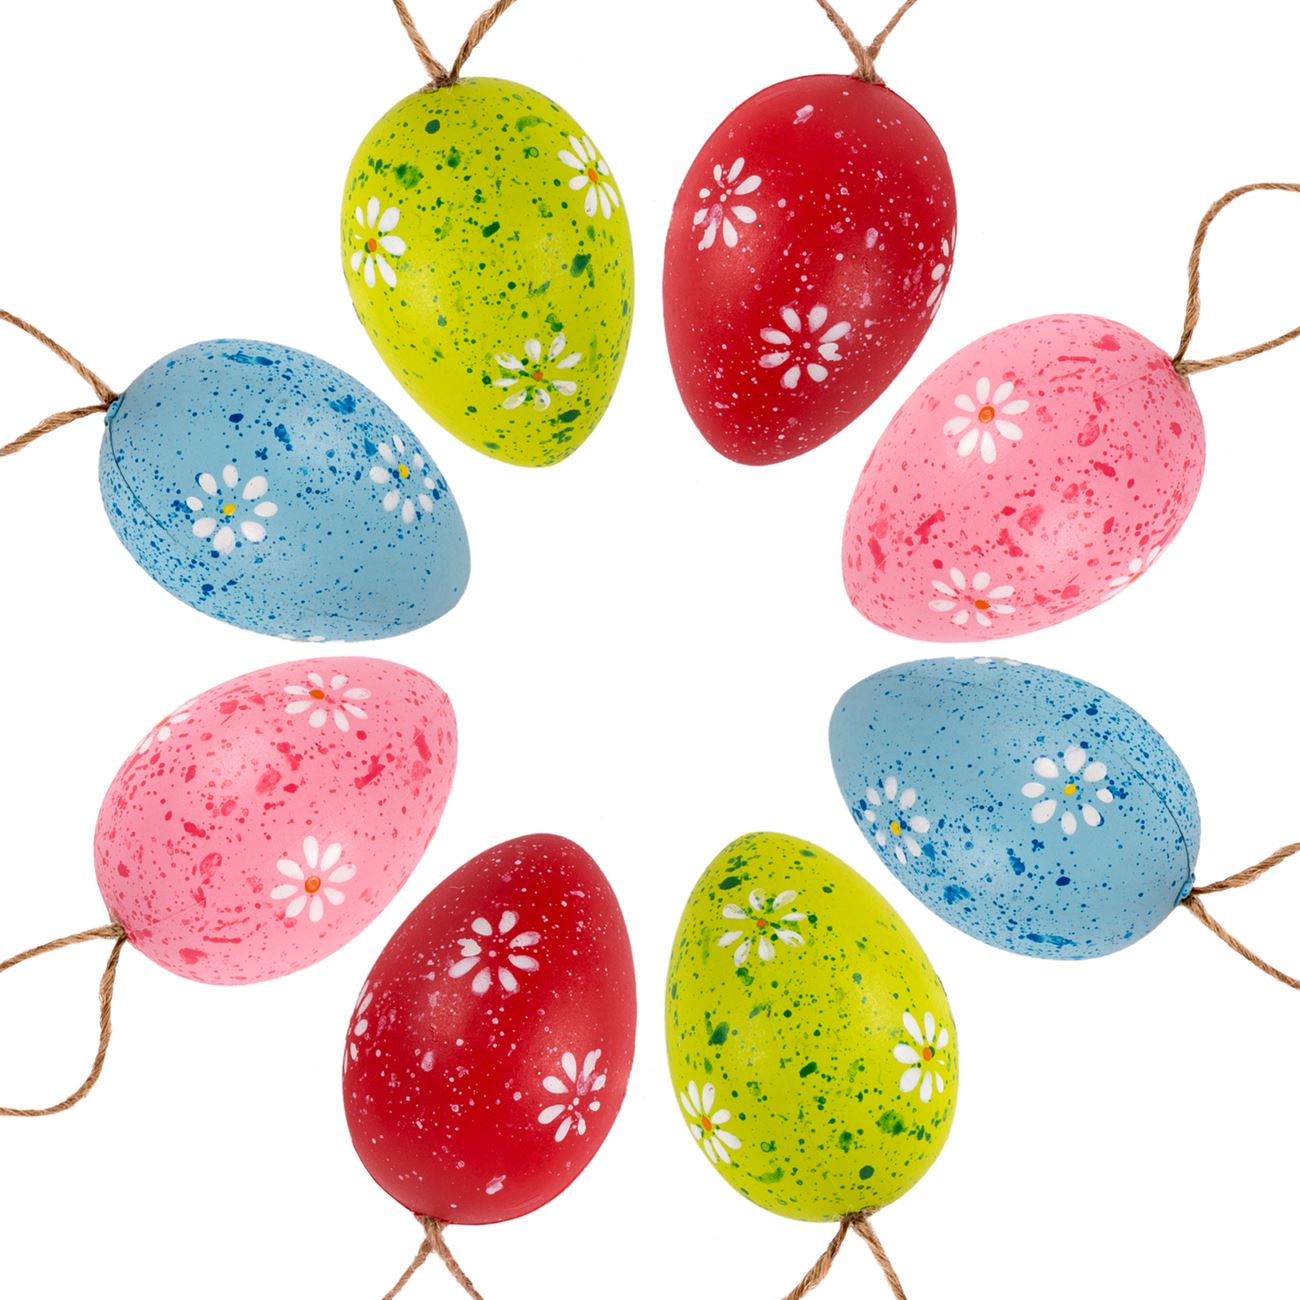 Húsvéti dekoratív tojások, színes virágokkal - 8 db.